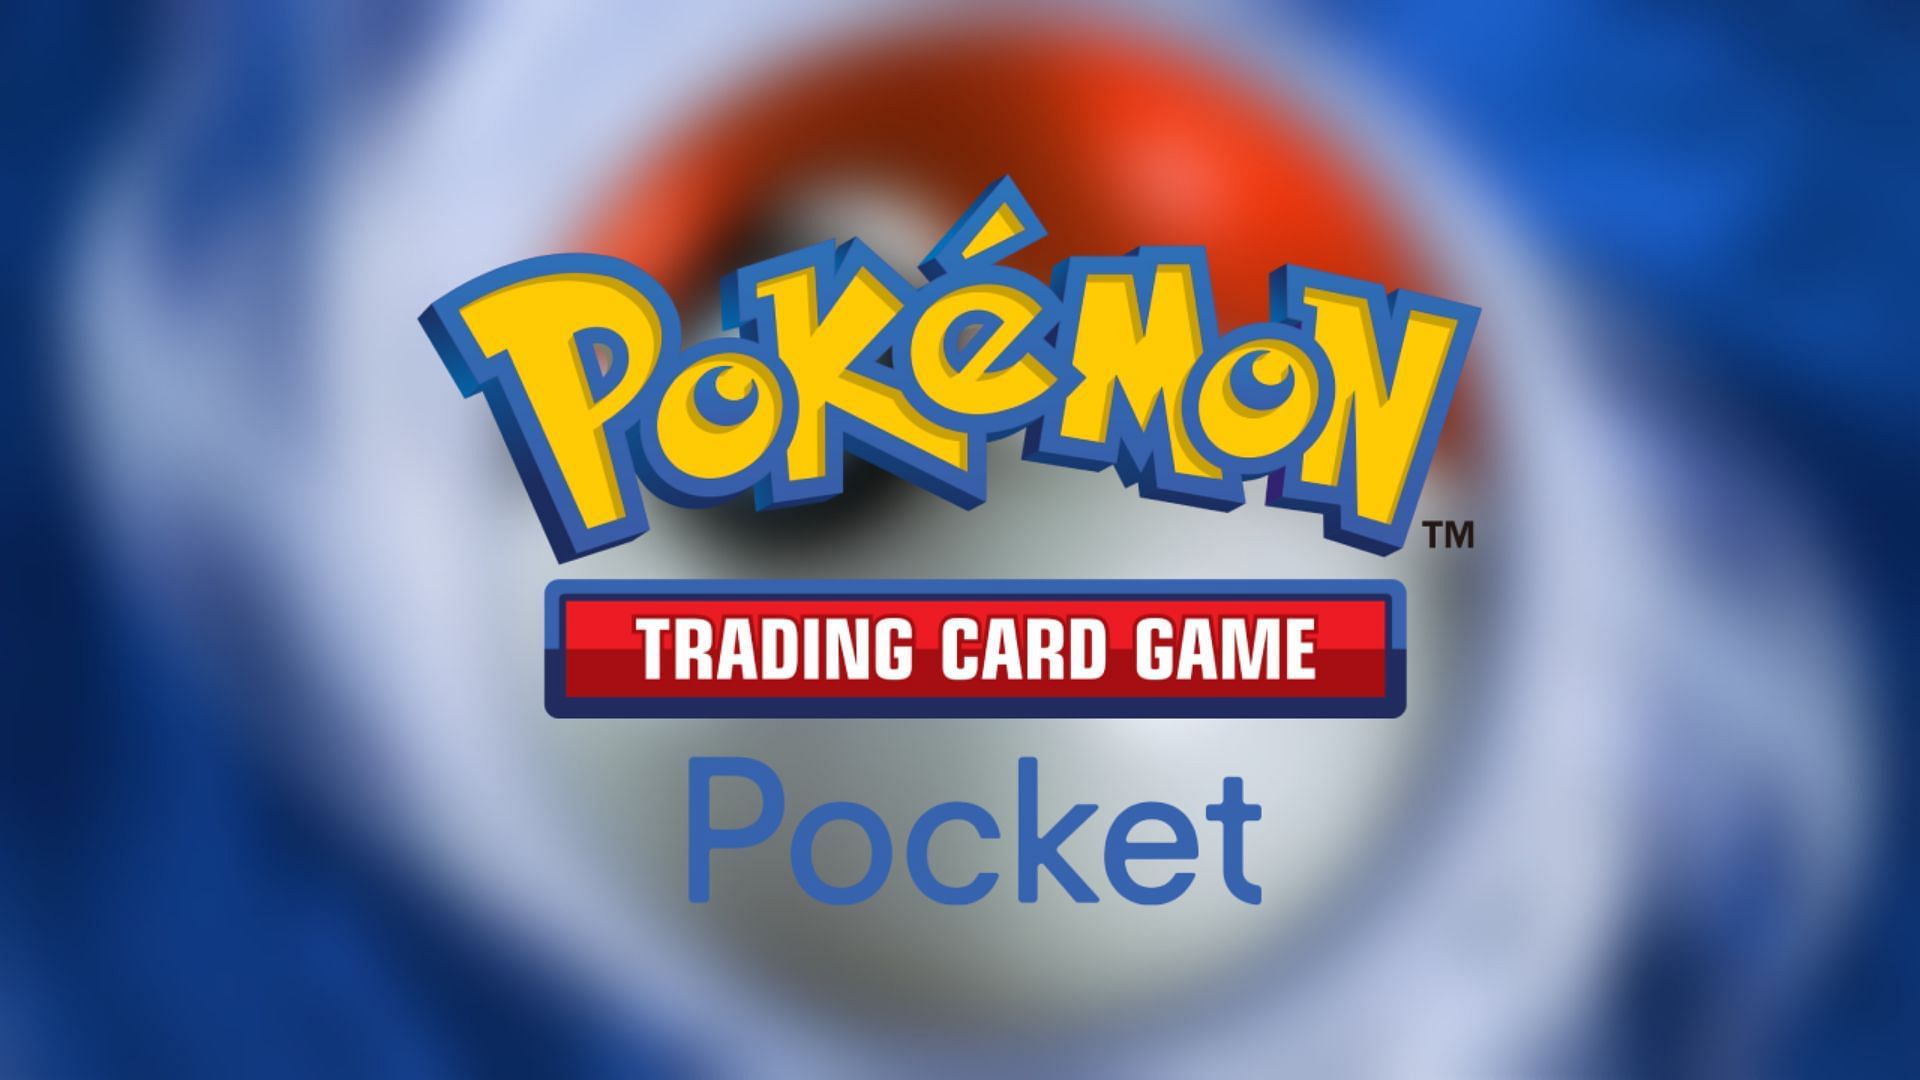 Official artwork for Pokemon TCG Pocket